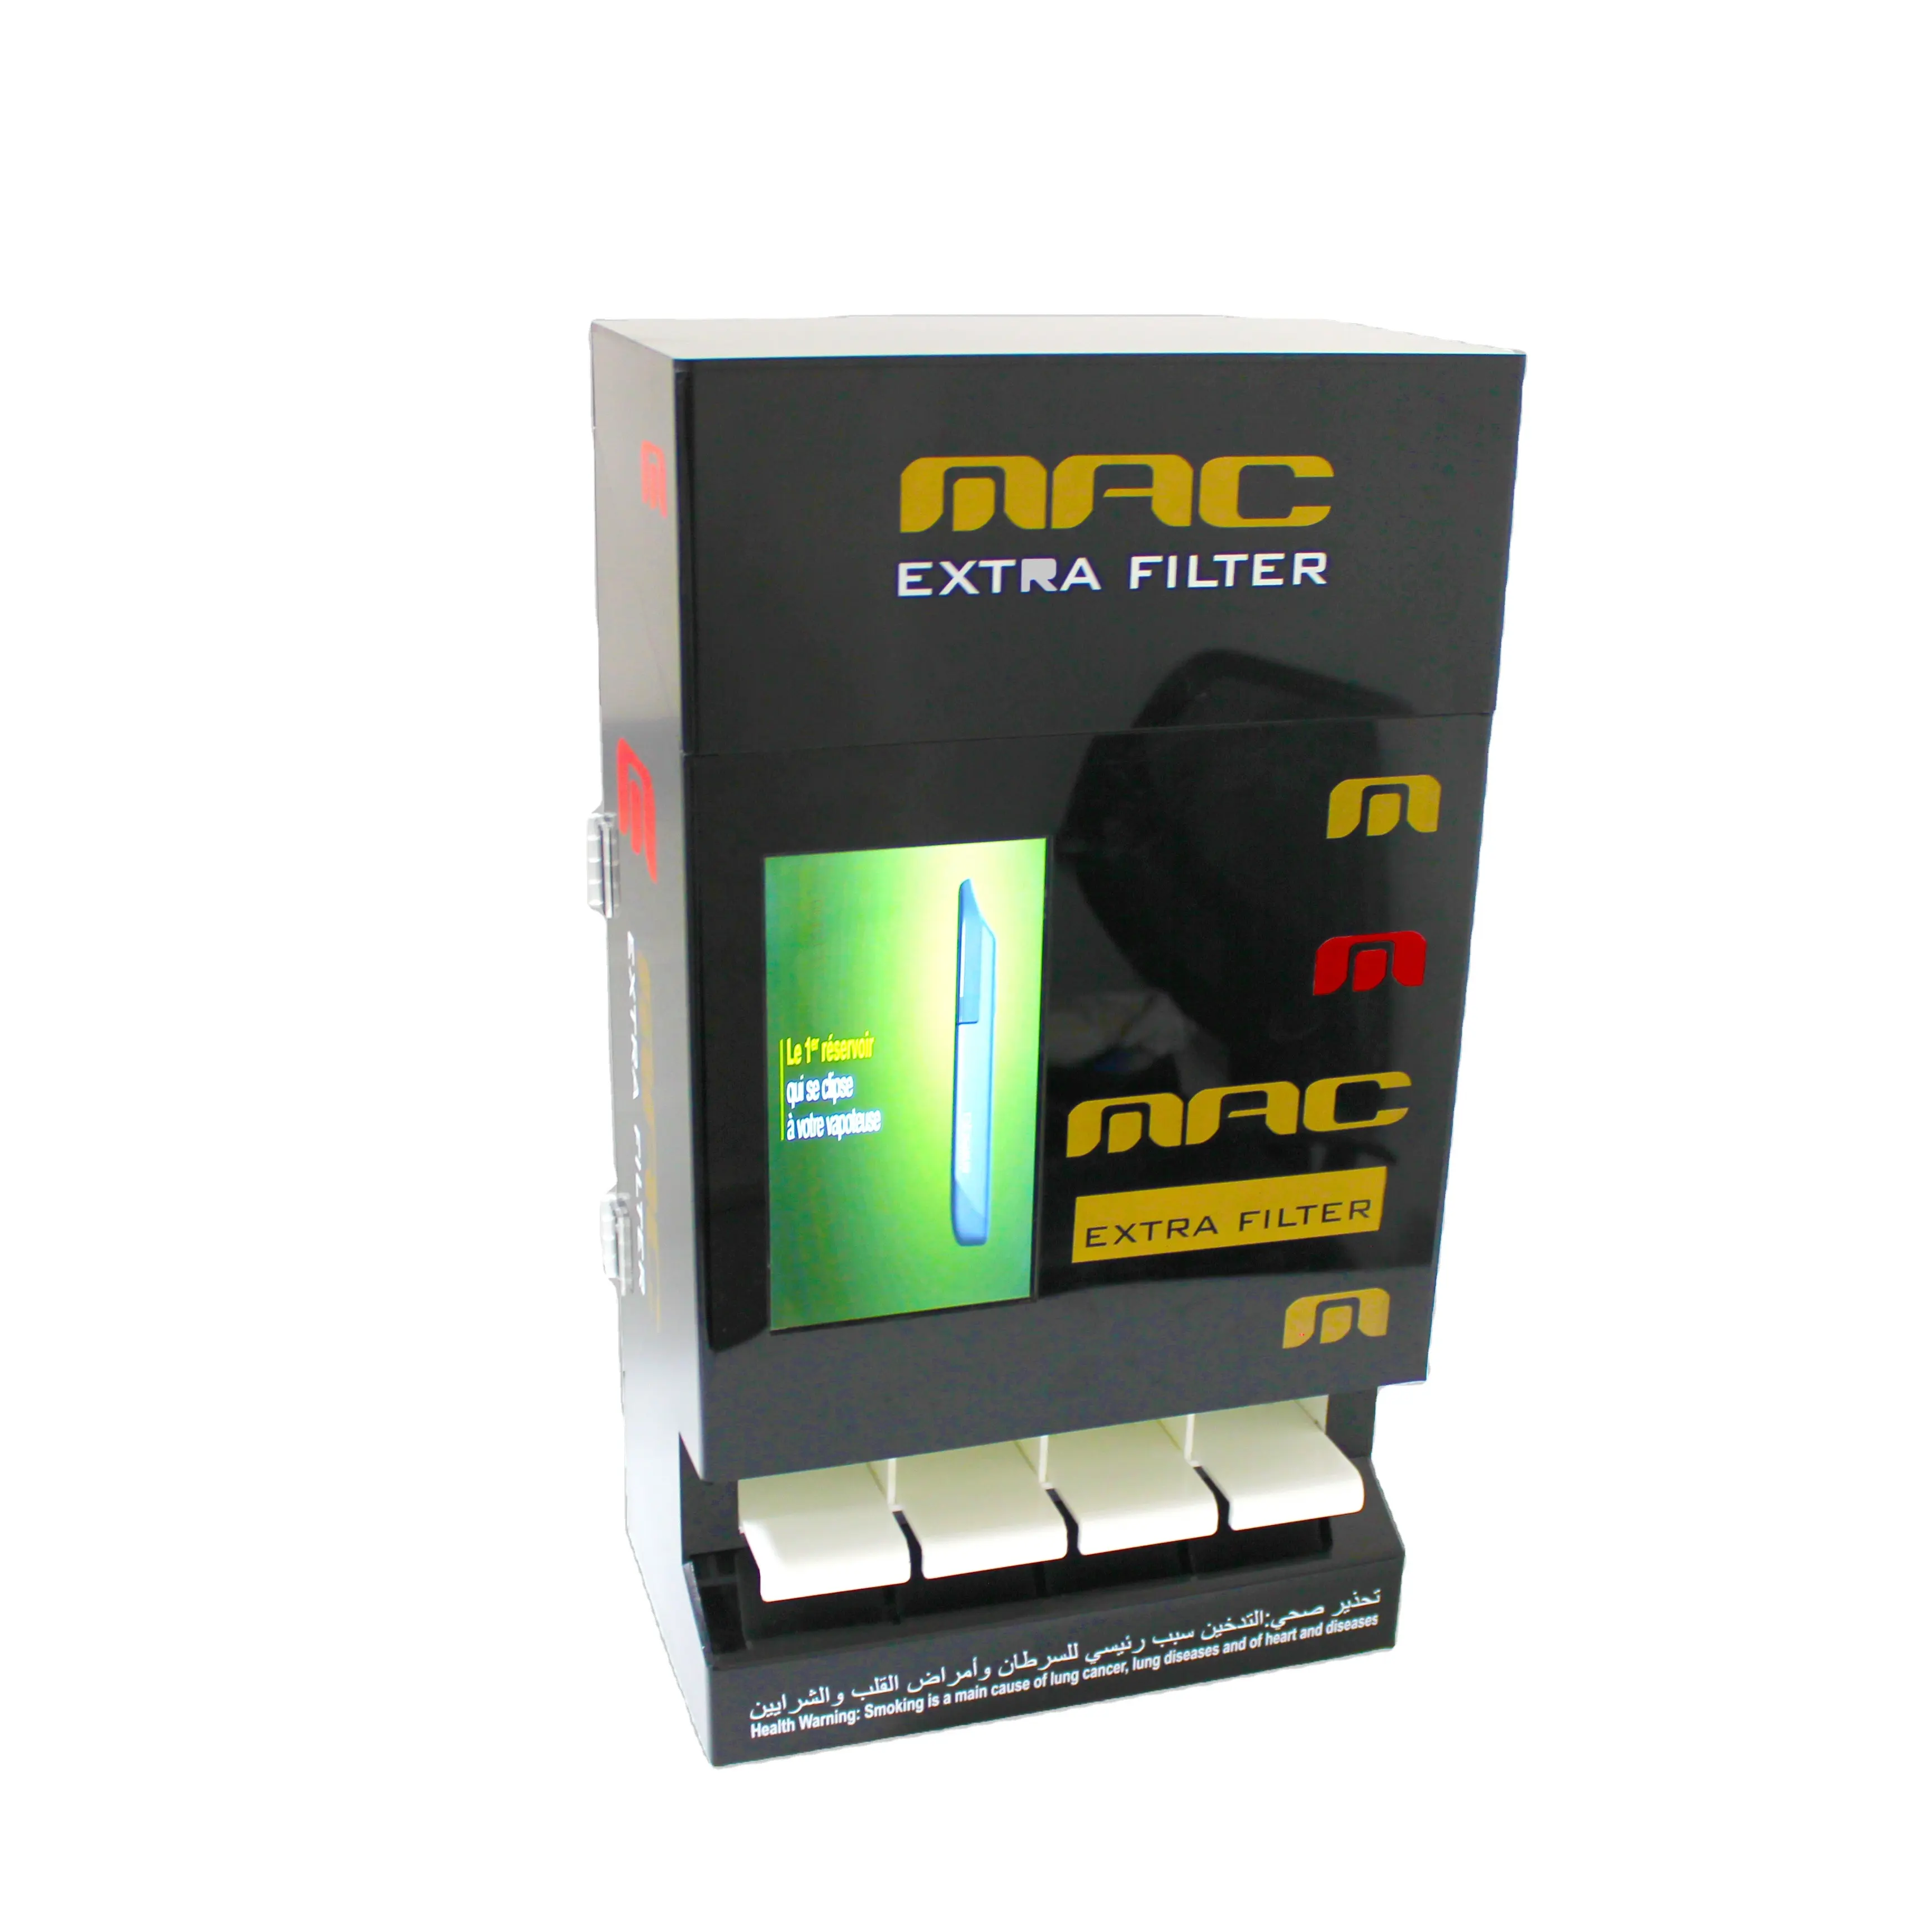 Mostrador automático acrílico para cigarrillos, soporte de exhibición de tabaco con LCD, venta al por menor